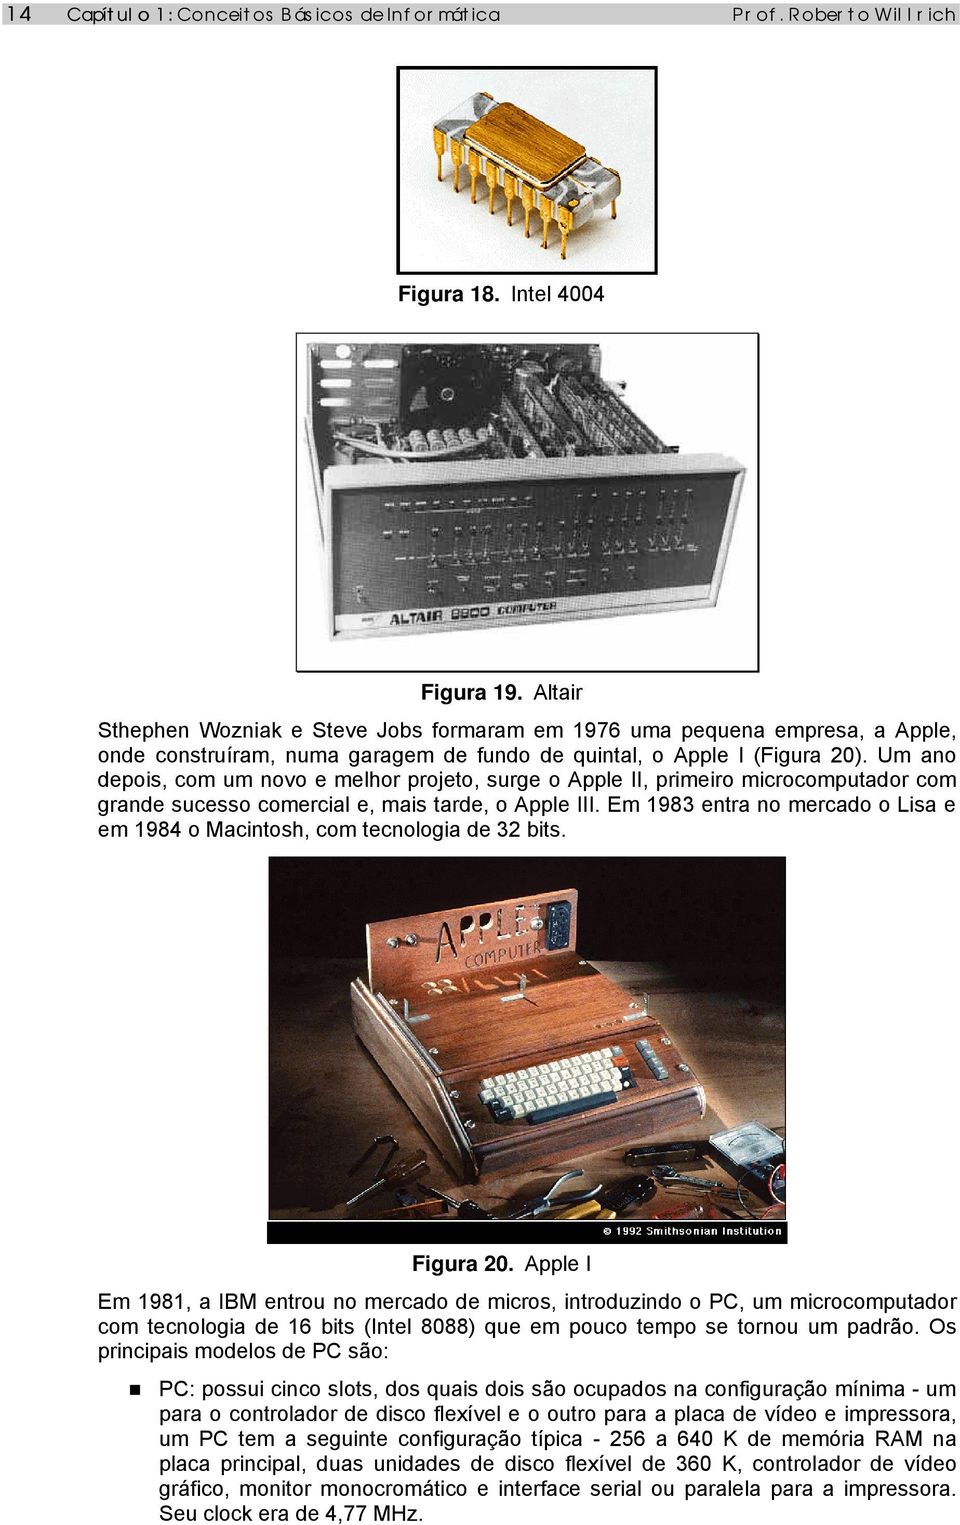 Um ano depois, com um novo e melhor projeto, surge o Apple II, primeiro microcomputador com grande sucesso comercial e, mais tarde, o Apple III.